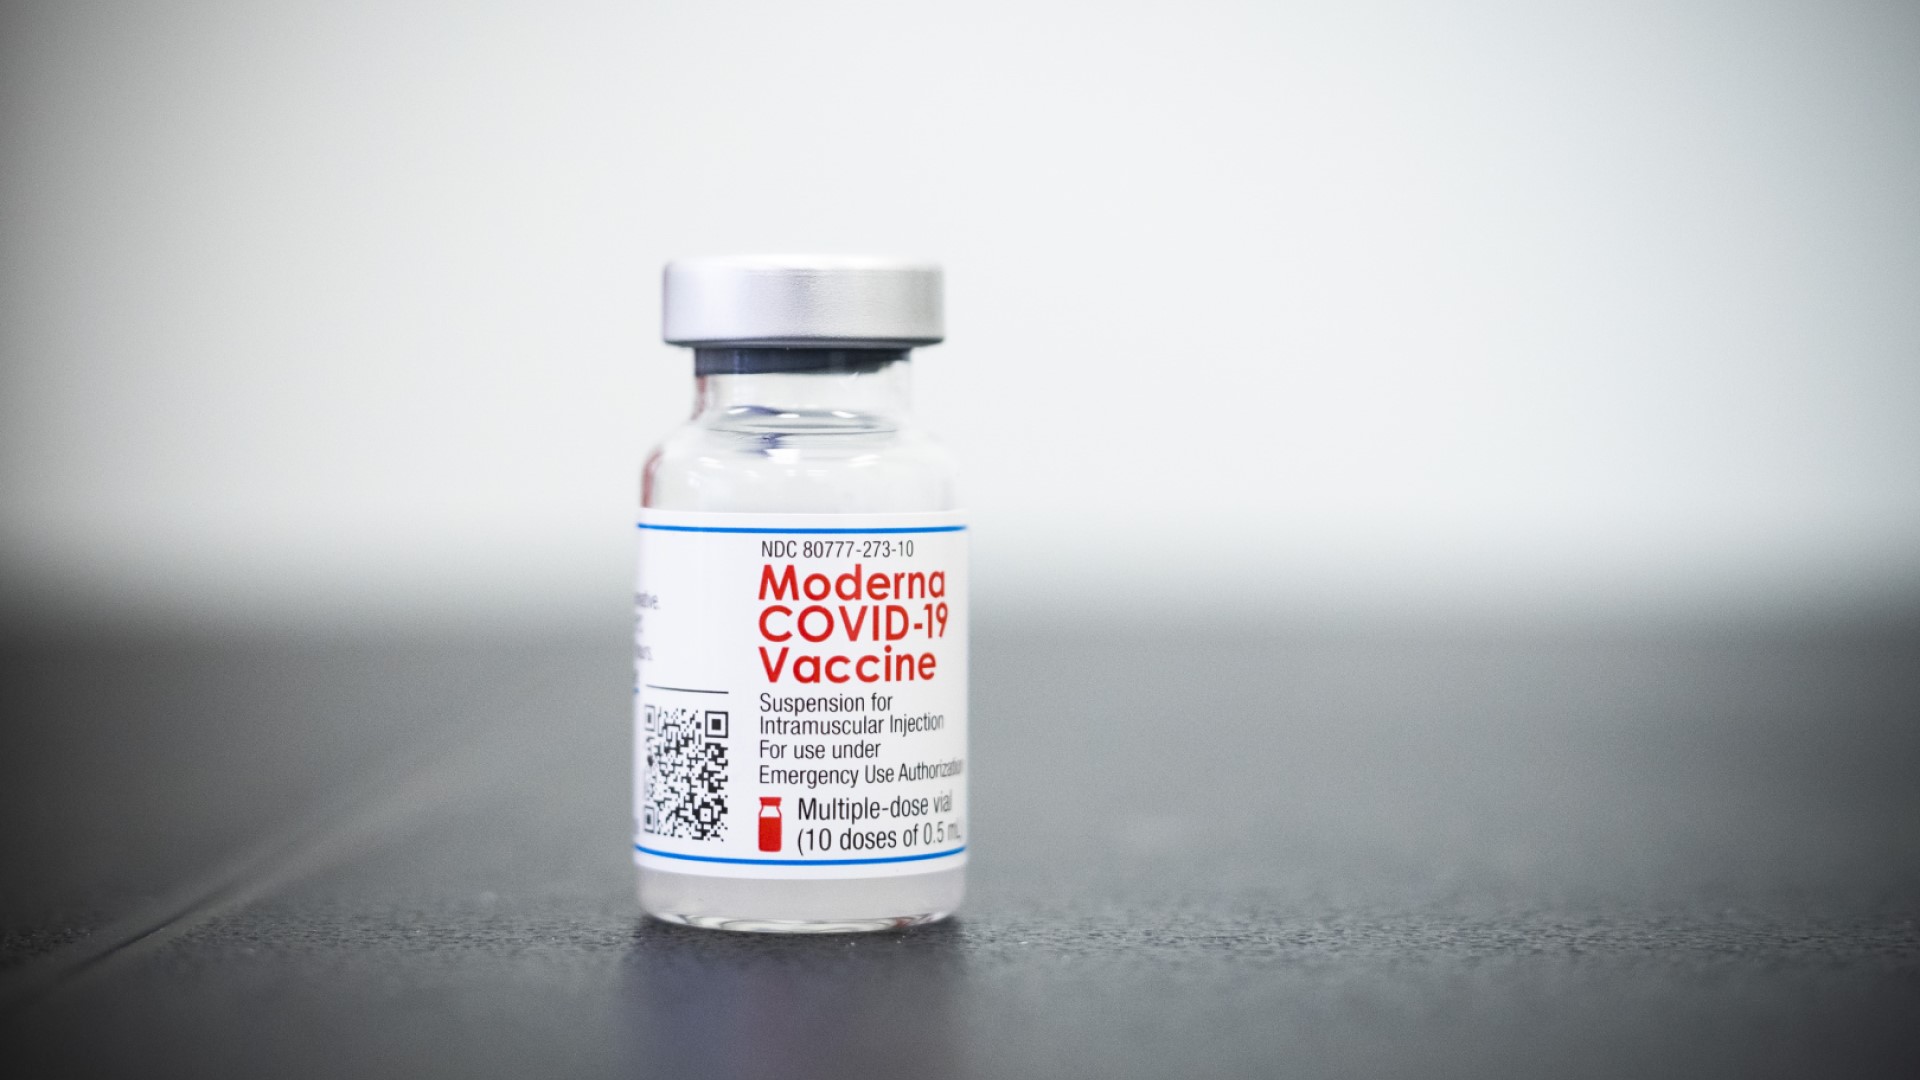 สหภาพยุโรปอนุมัติวัคซีน COVID-19 ของ Moderna สำหรับเด็ก 12 – 17 ปี